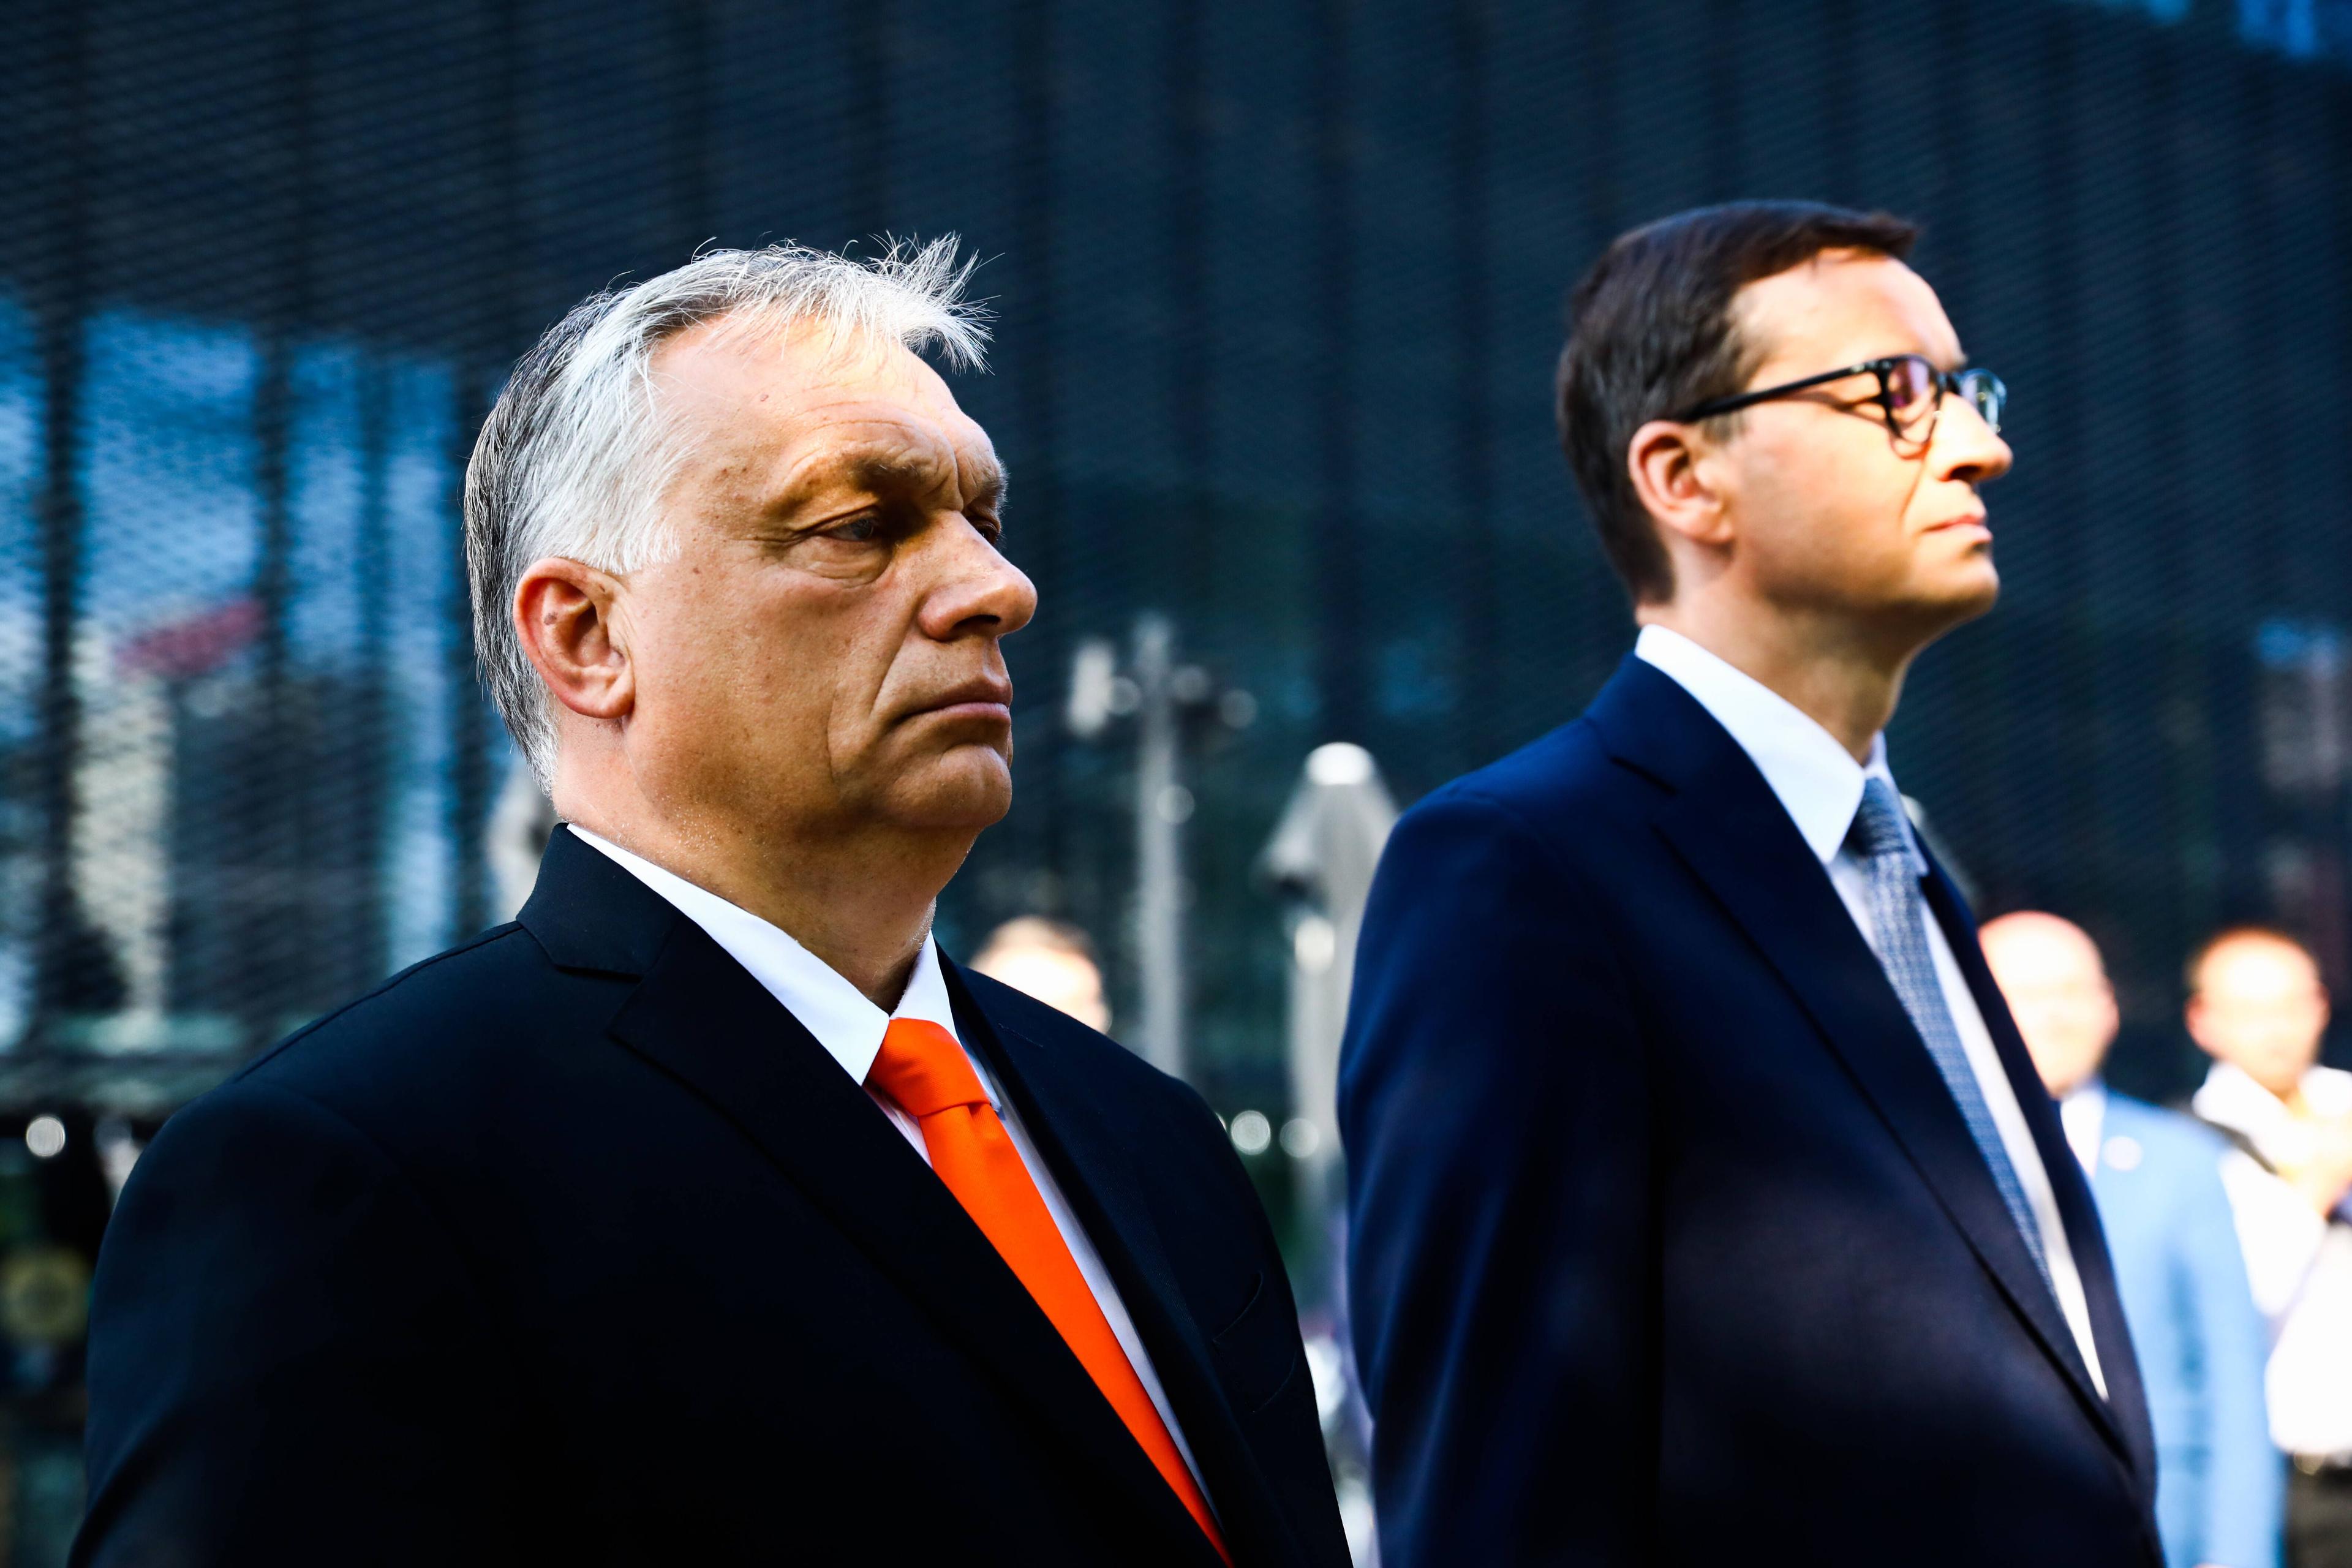 Der ungarische Regierungschef Viktor Orbán und der polnische Regierungschef Mateusz Morawiecki bei einem Treffen in Kattowitz, 30. Juni 2021.